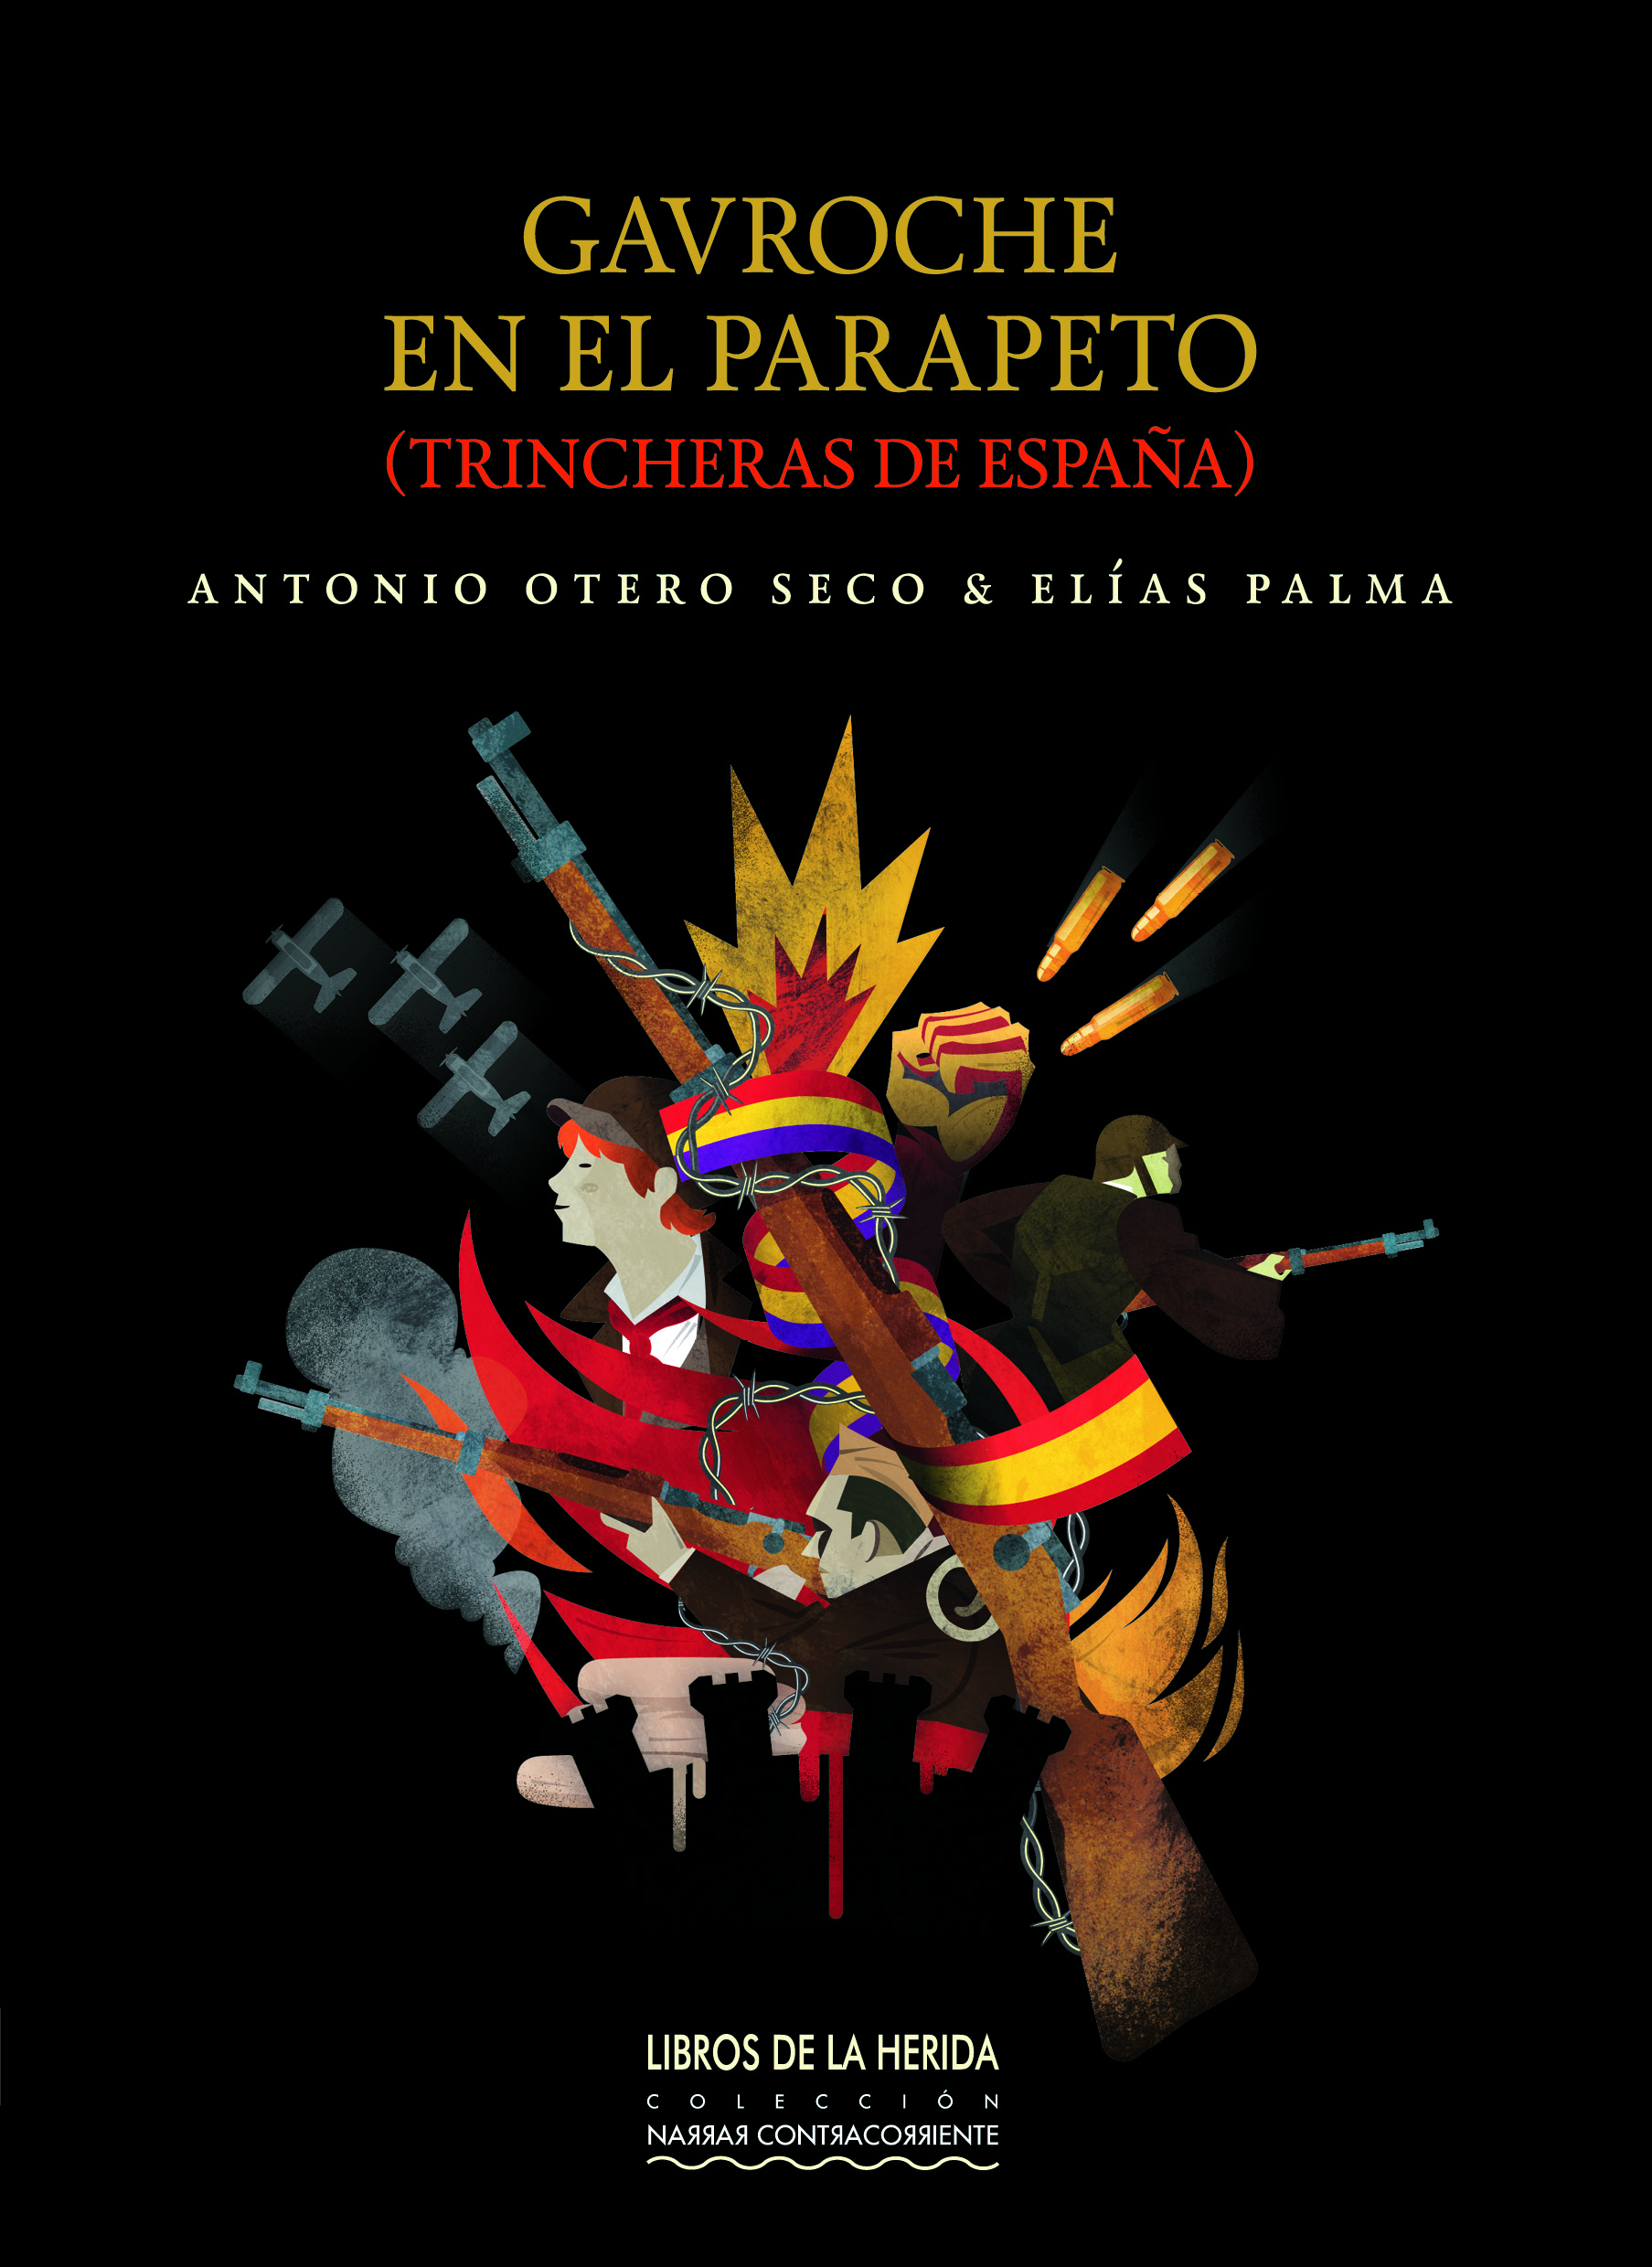 Gira de presentaciones de la novela GAVROCHE EN EL PARAPETO, de Antonio Otero Seco y ElÃas Palma (del 21 al 26 de septirembre)